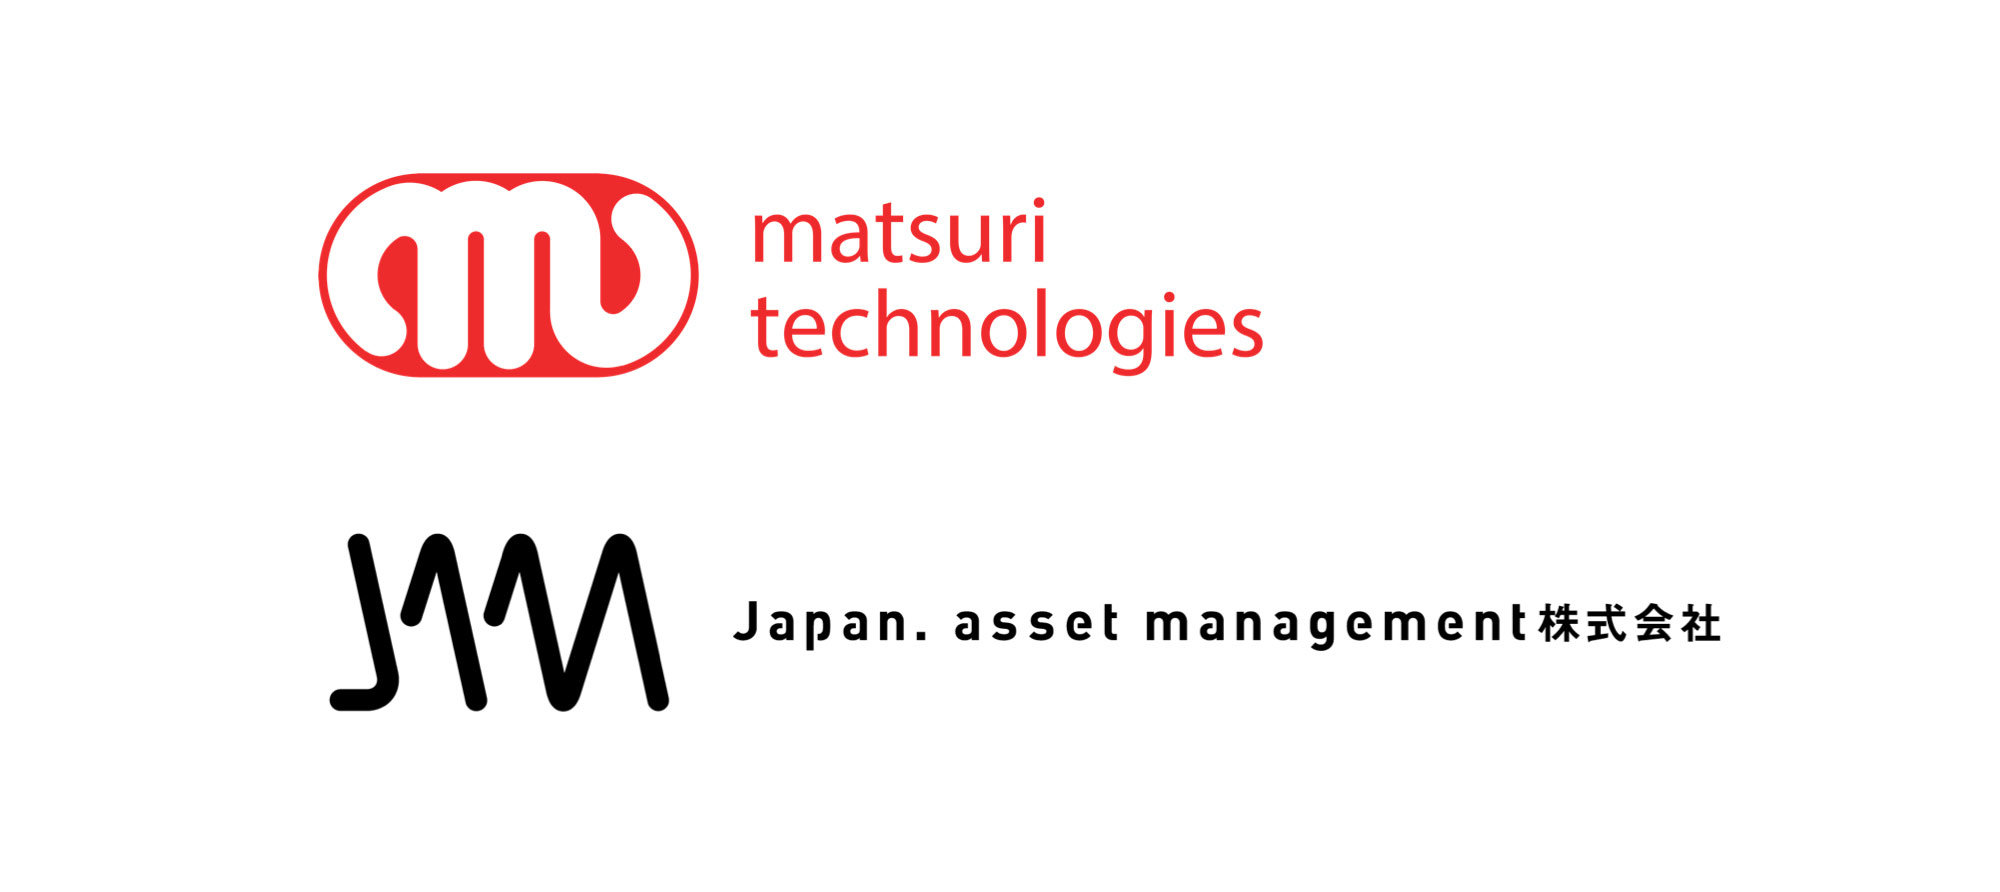 民泊運営ツールを展開するmatsuri technologies株式会社と業務提携し、オーナーや投資家向け民泊事業のワンストップサービスを開始。